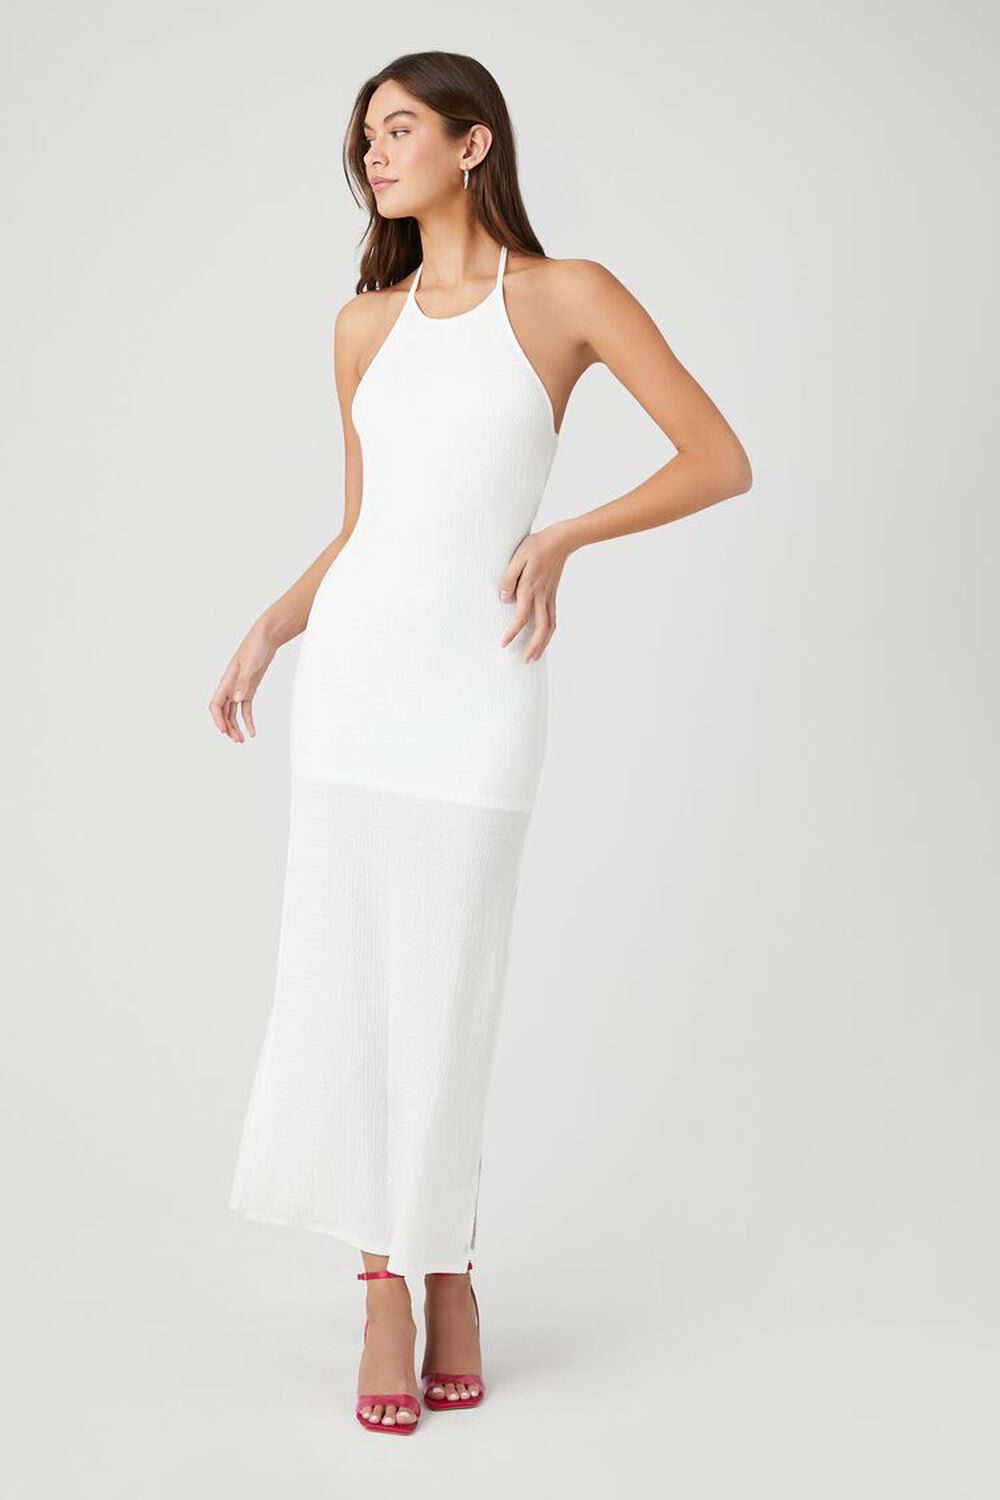 WHITE Halter M-Slit Maxi Dress, image 1